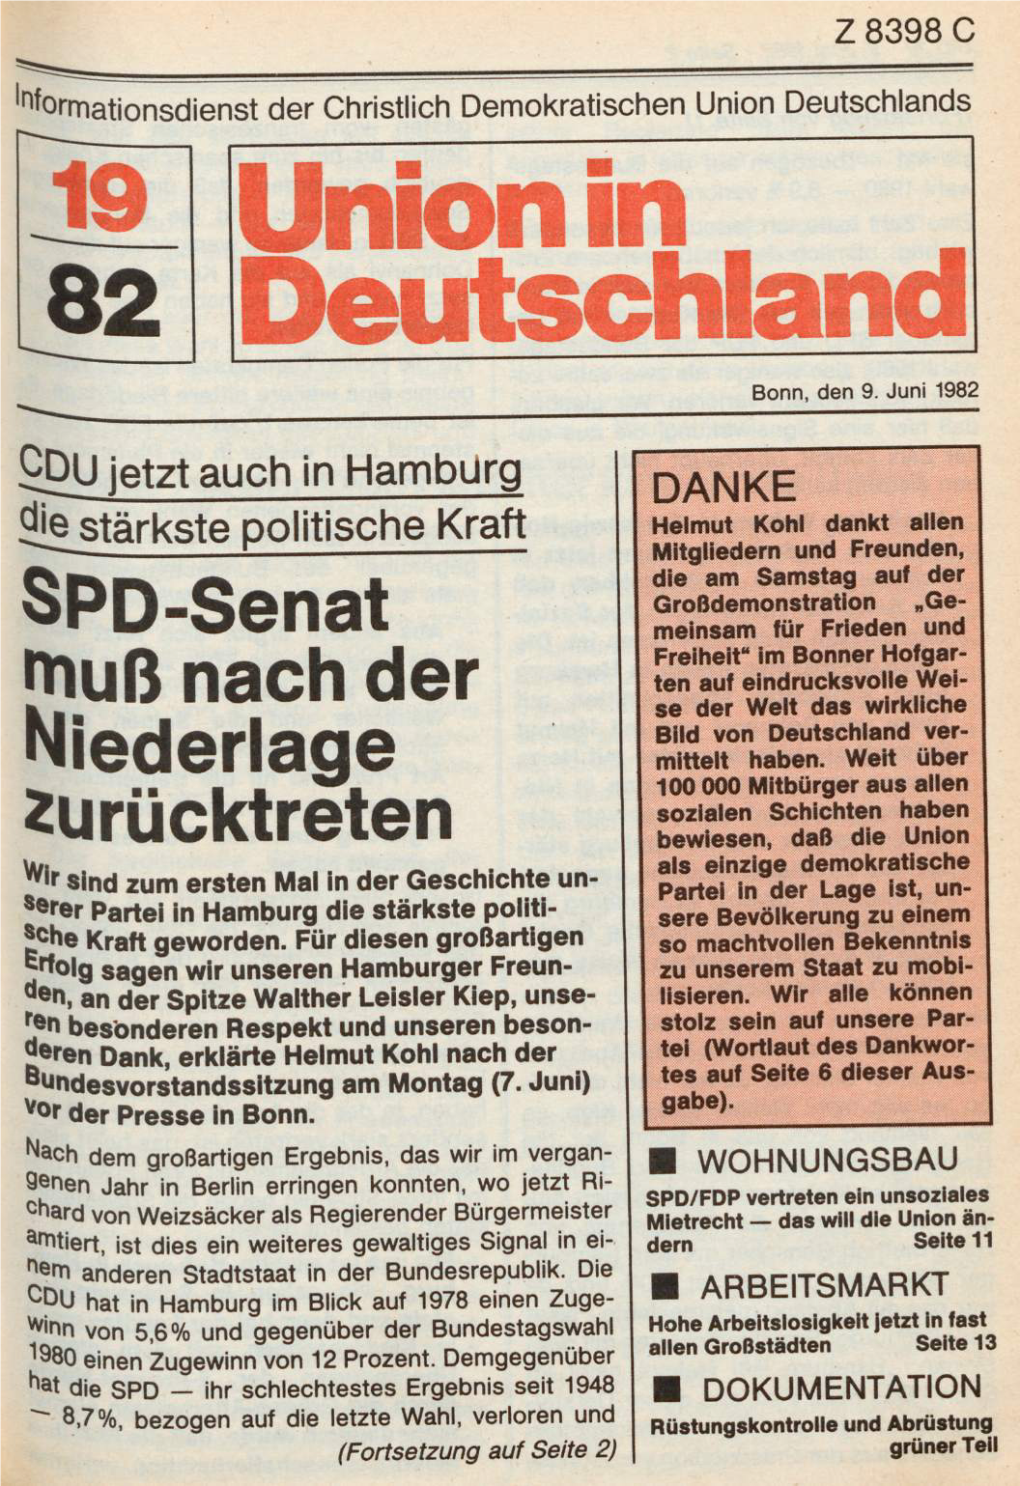 UID 1982 Nr. 19, Union in Deutschland